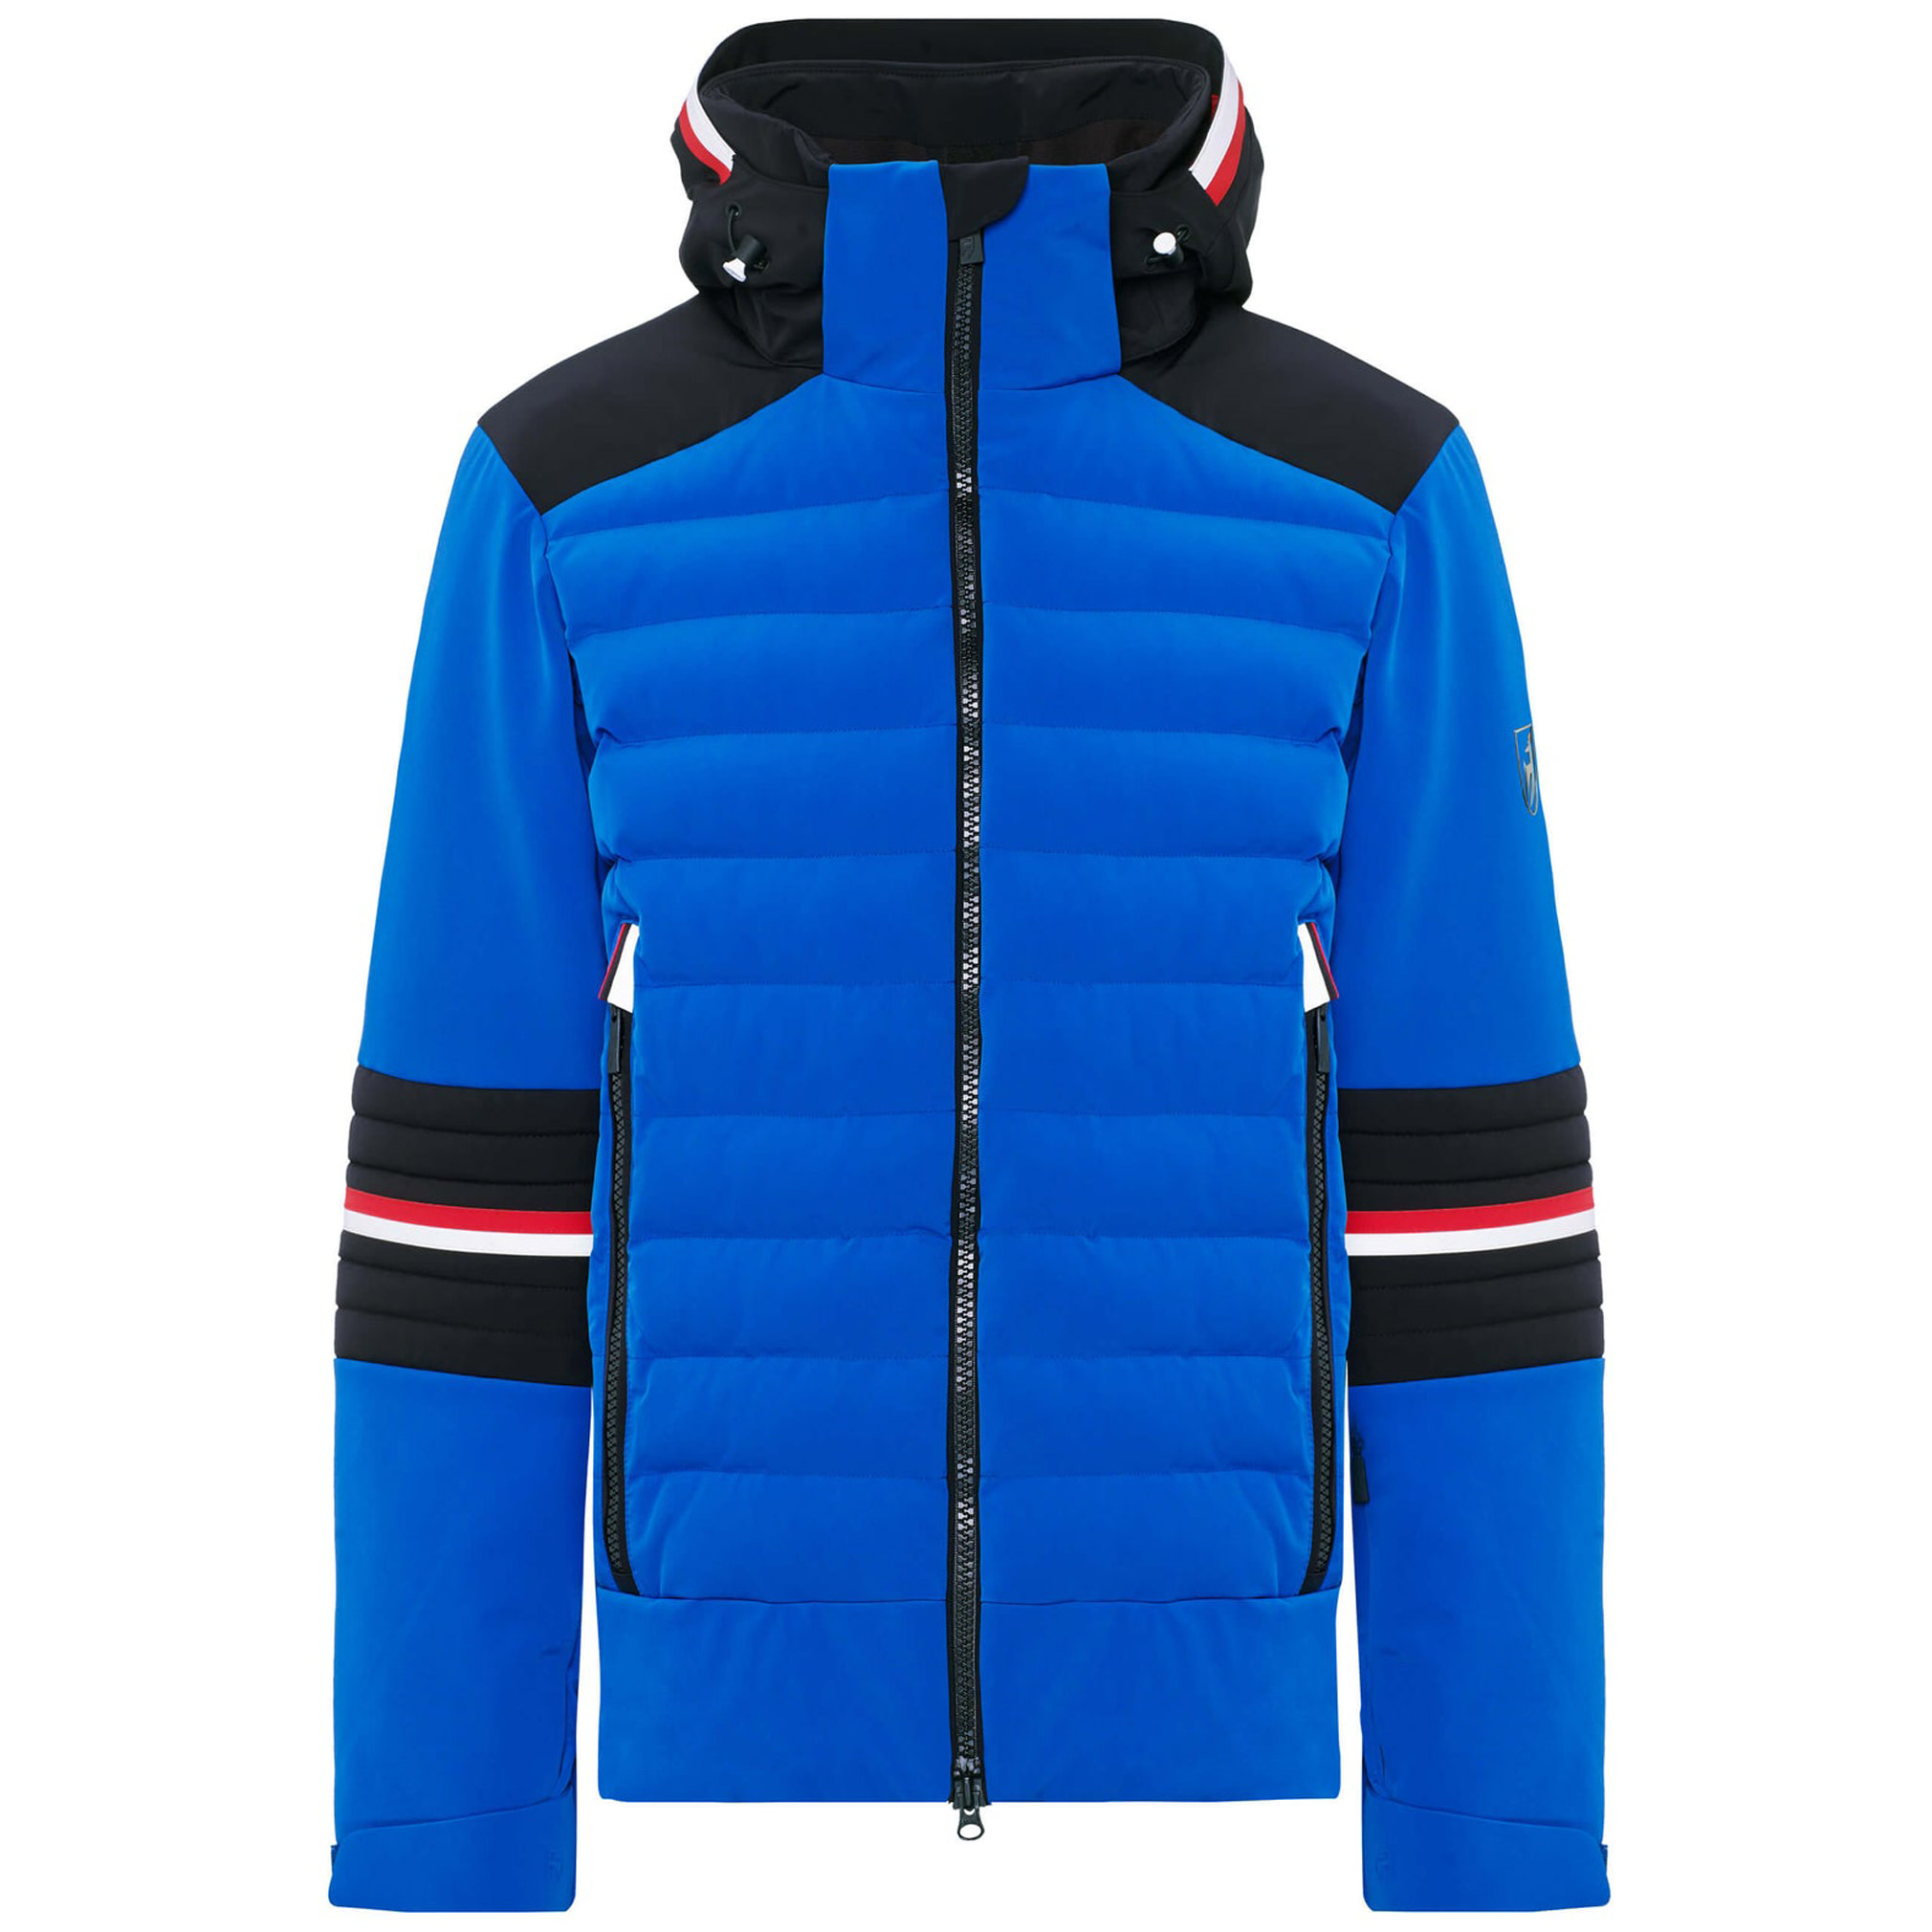 Maximus Splendid ski jacket